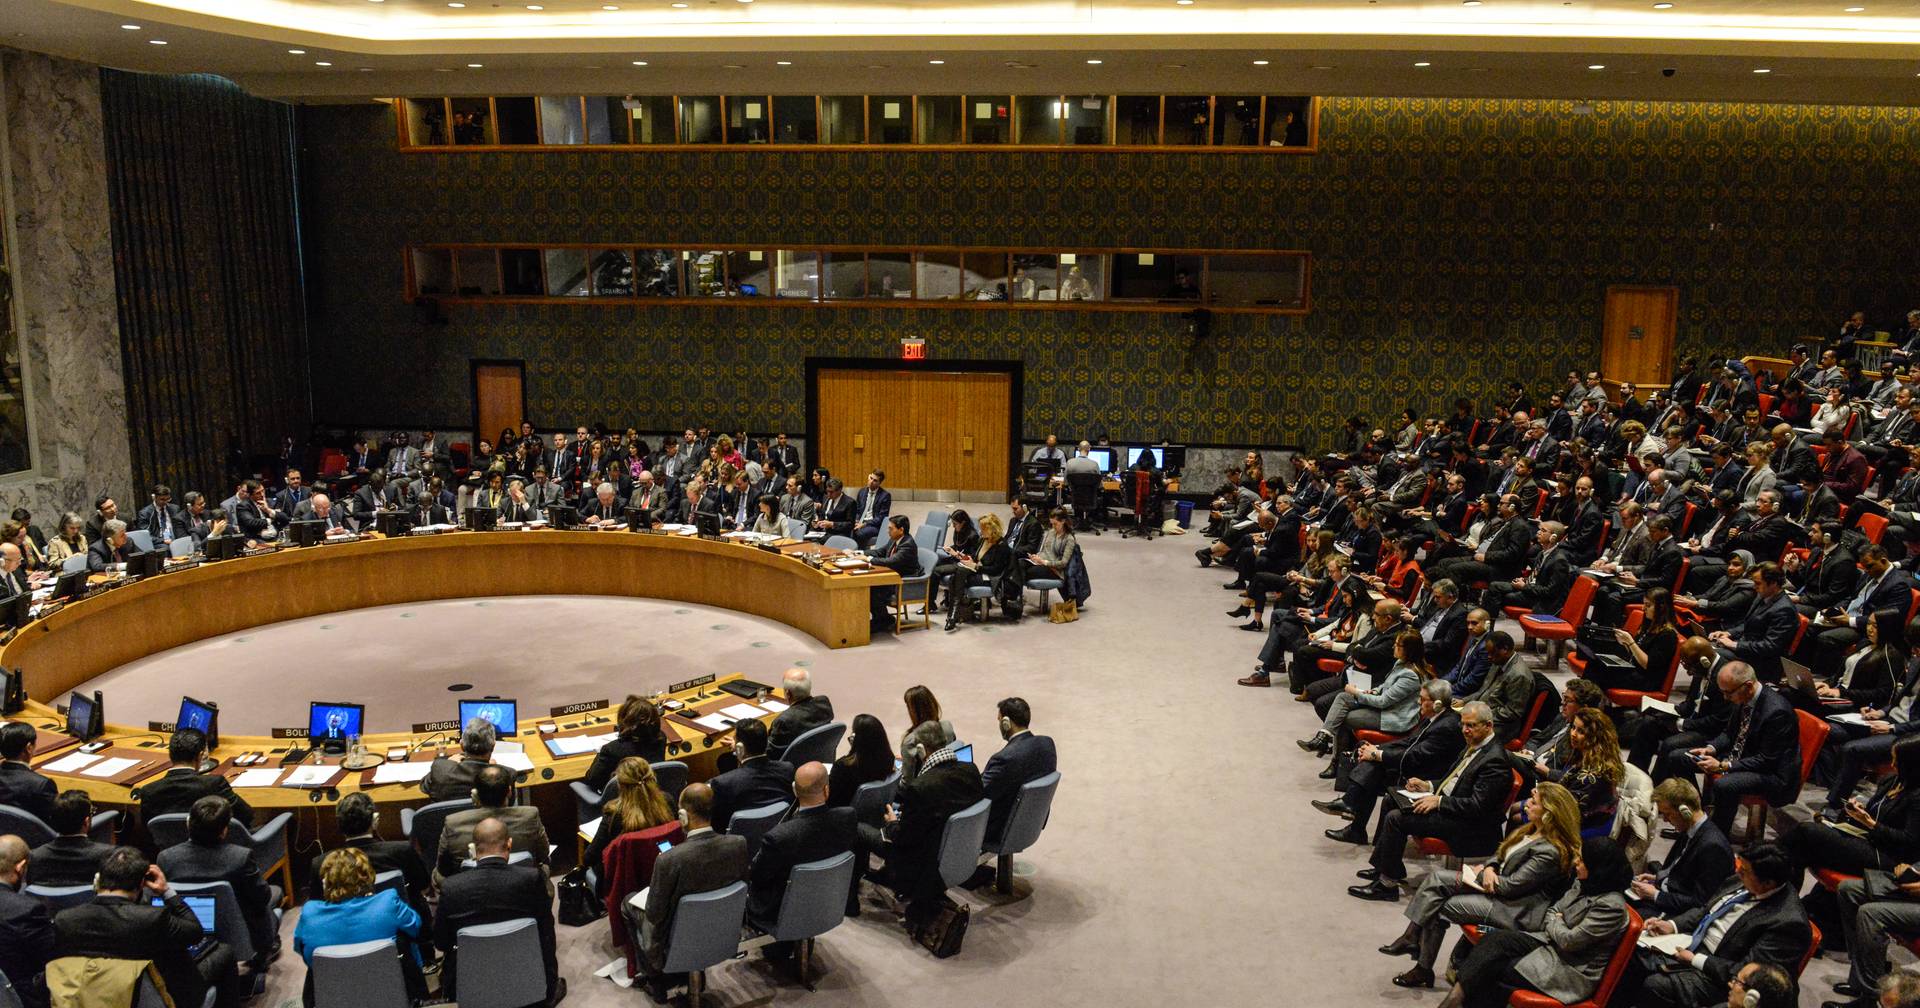 Rússia veta no Conselho de Segurança resolução que condena referendos de anexação em territórios ucranianos